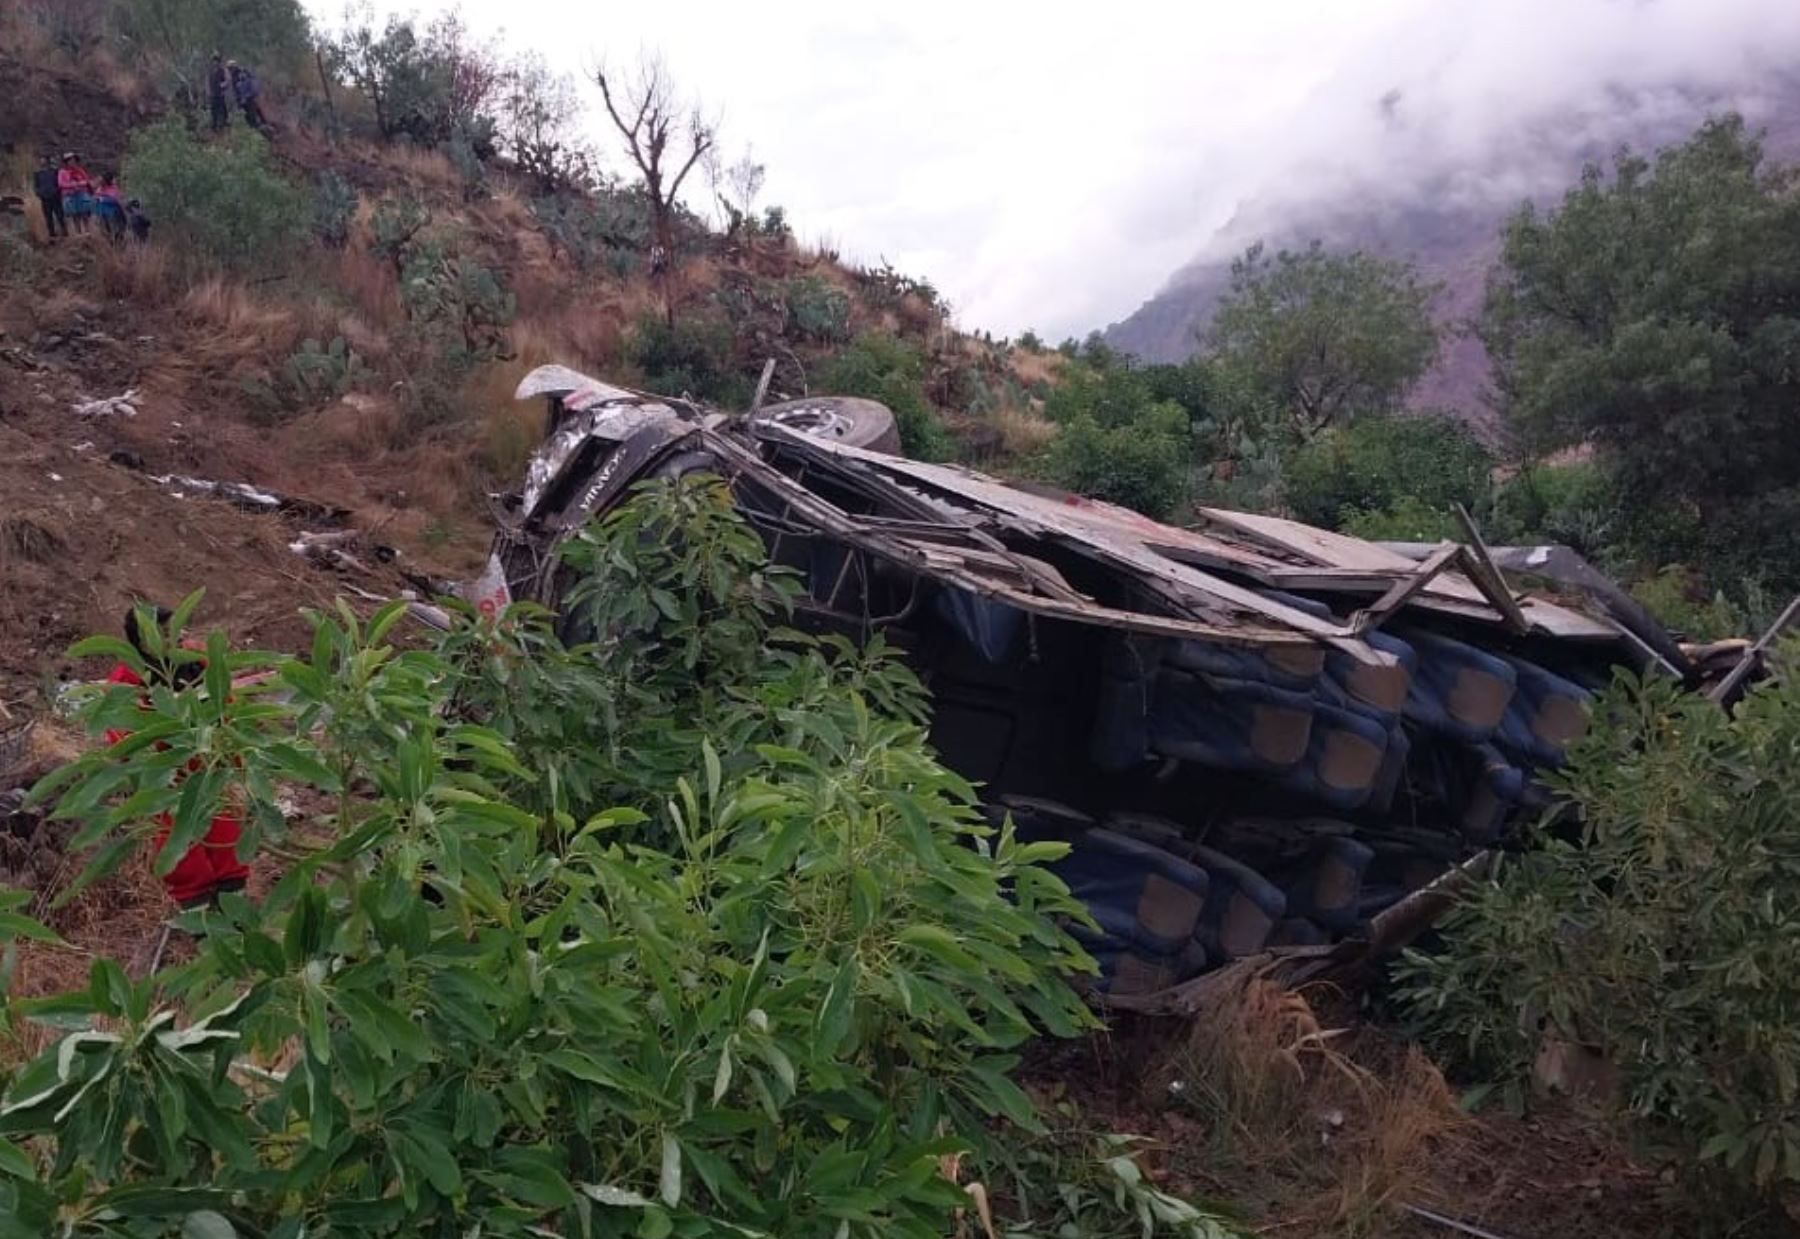 Foto cedida hoy por la Agencia Andina en donde se observa un autobús accidentado, en Huaccoto, en la provincia de Churcampa a más de 650 kilómetros de Lima (Perú). EFE/Agencia Andina